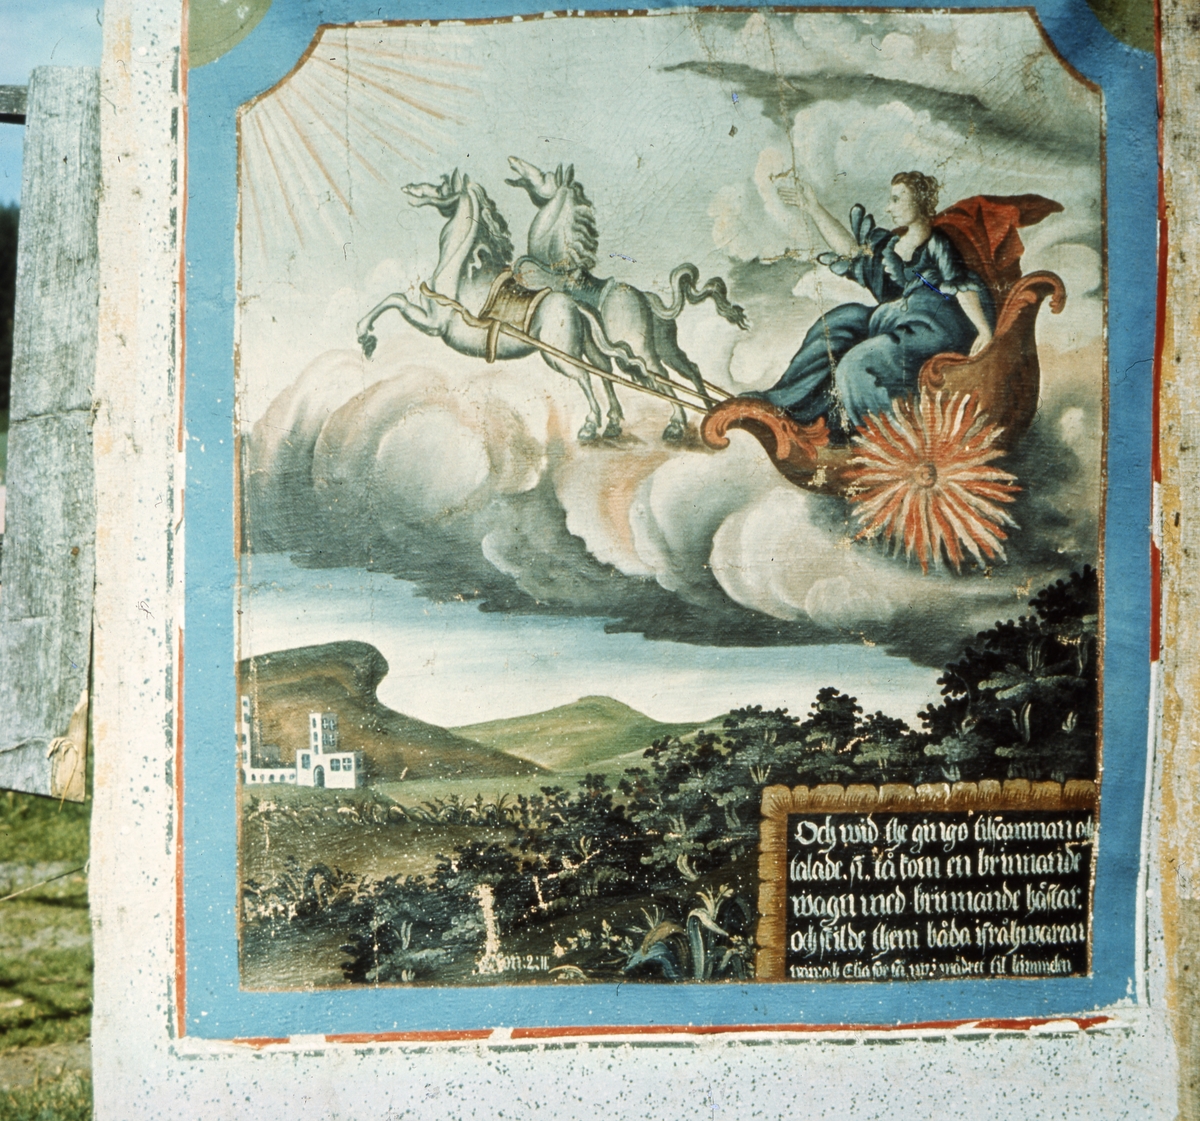 Väggfält föreställande Elias himlafärd. Elia i vagn dras upp till himlen av två hästar i en brinnande vagn.